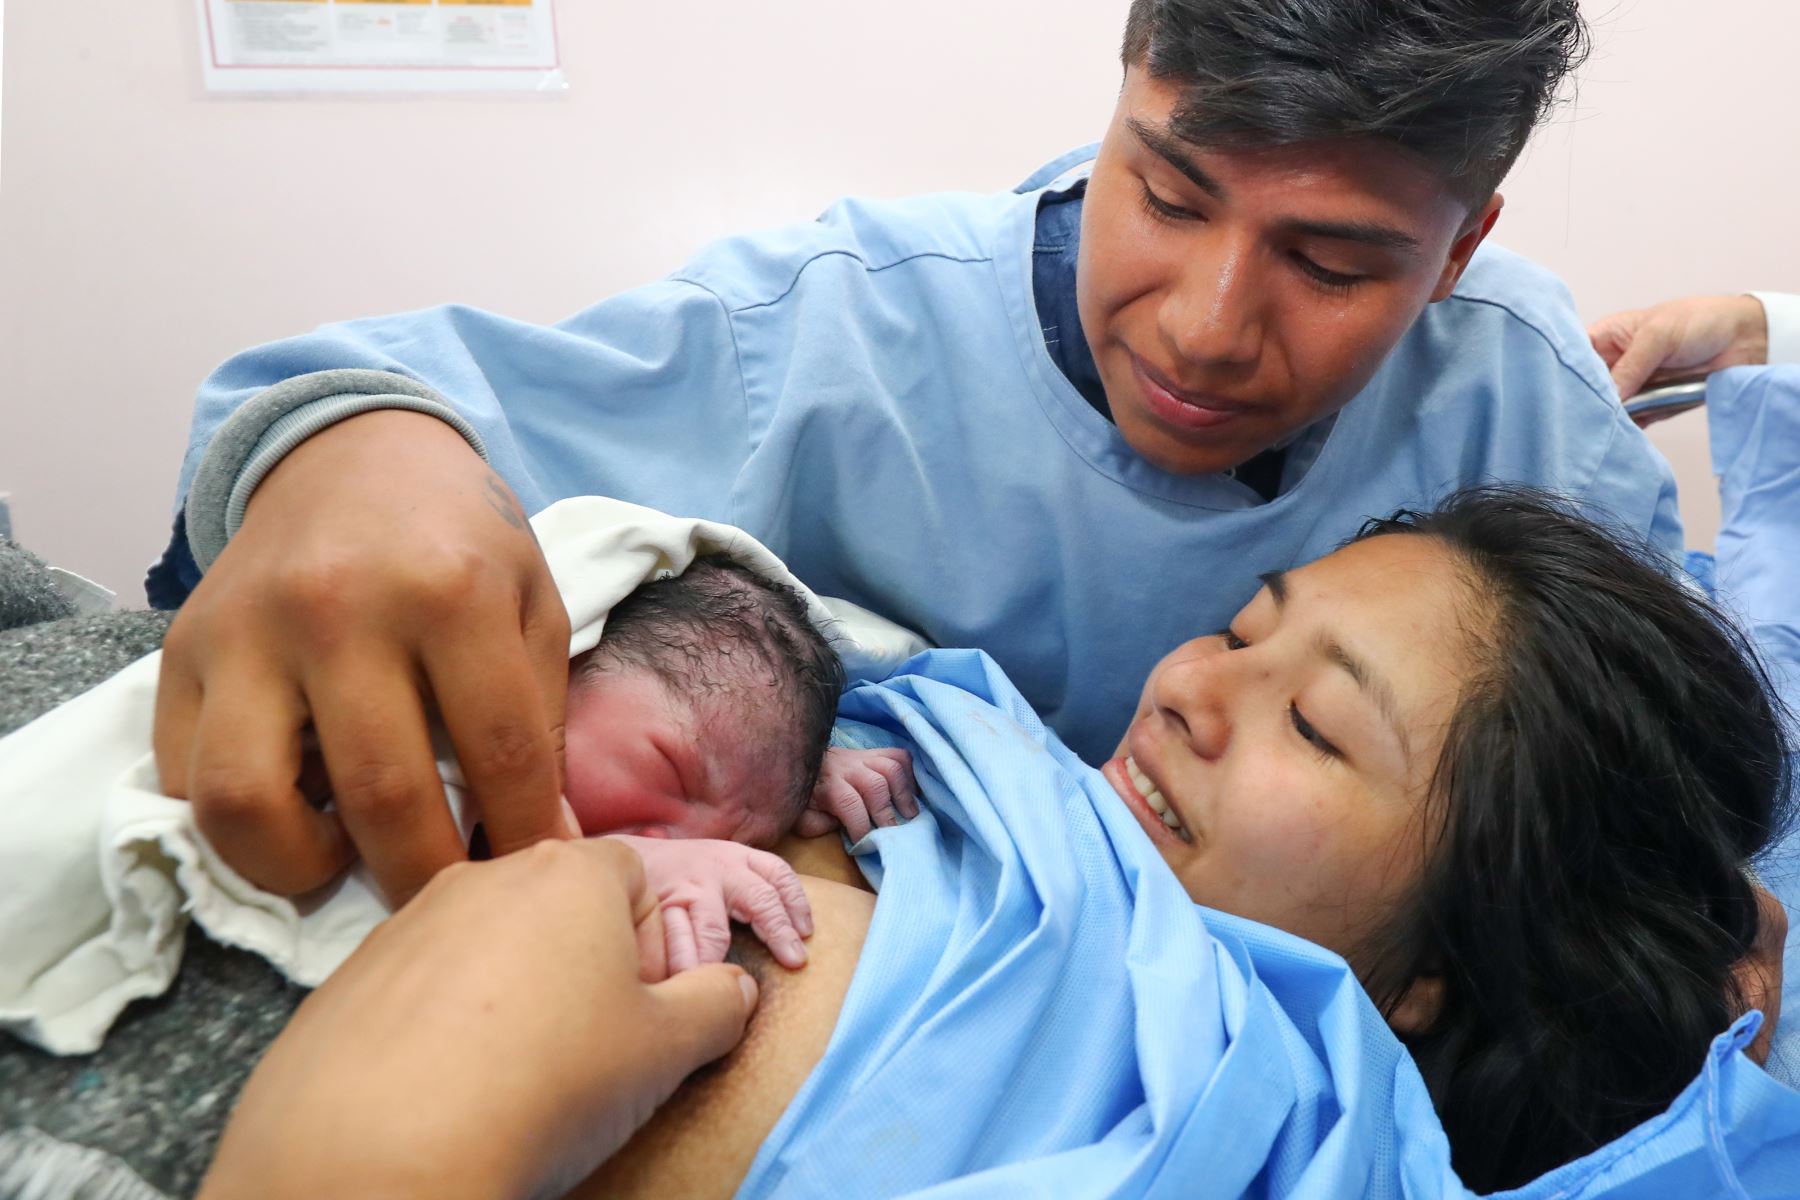 El nacimiento del bebé de Romina y William fue presenciado por policías que se gradúan como "policías parteros". Foto: ANDINA/Norman Córdova